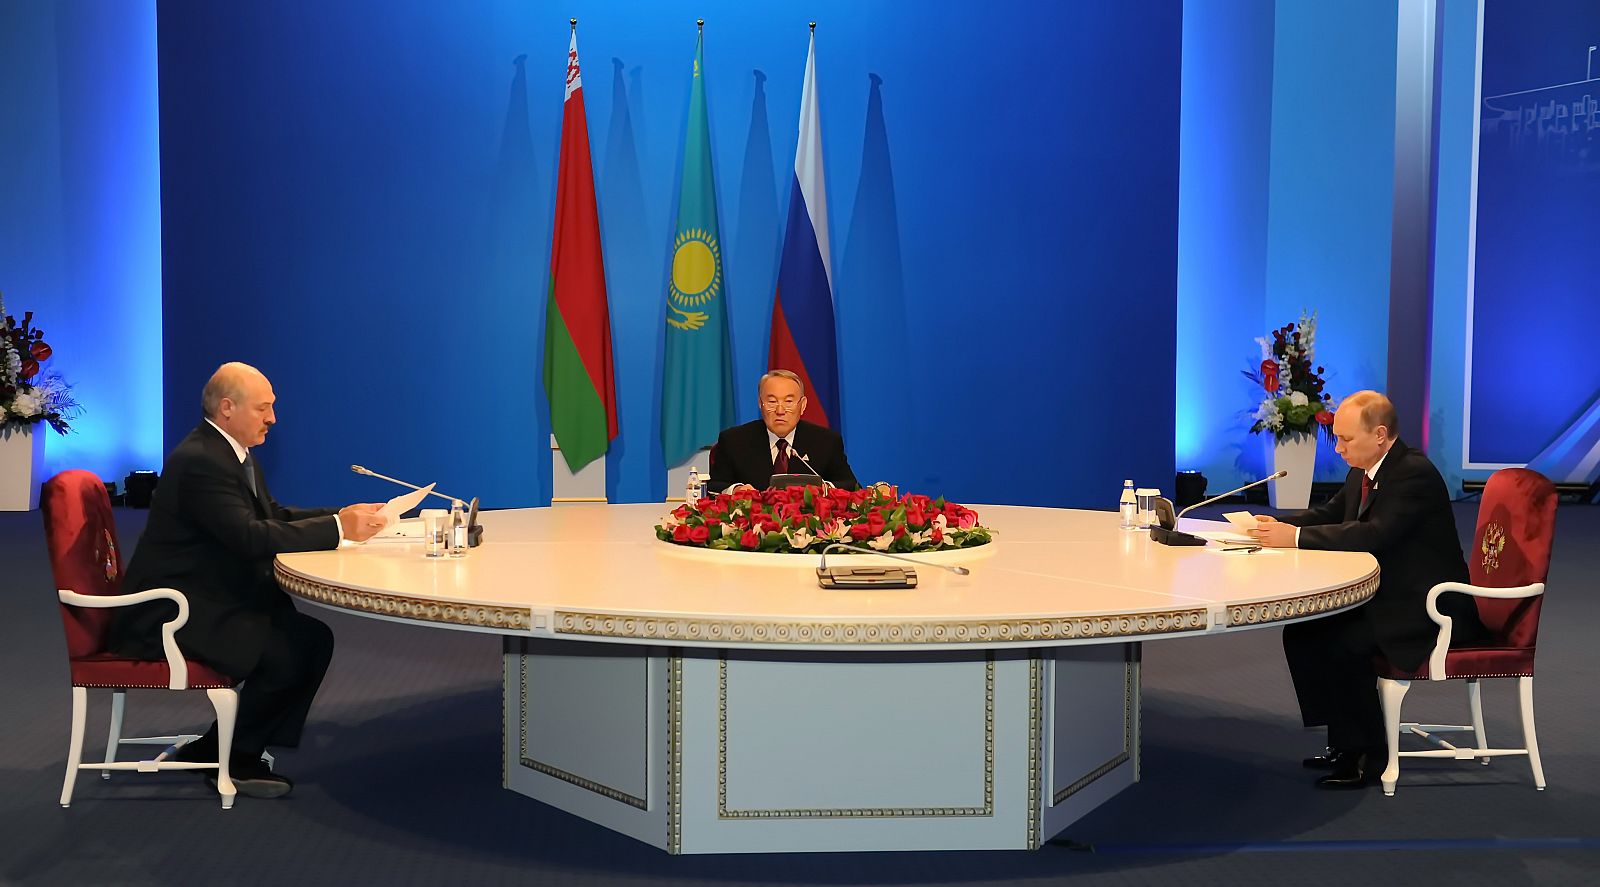 De derecha a izquierda, Vladímir Putin, presidente de Rusia; Nursultán Nazarbáyev, de Kazajstán; y Alexander Lukashenko, de Bielorrusia, durante la firma del acuerdo de Unión Económica Euroasiática